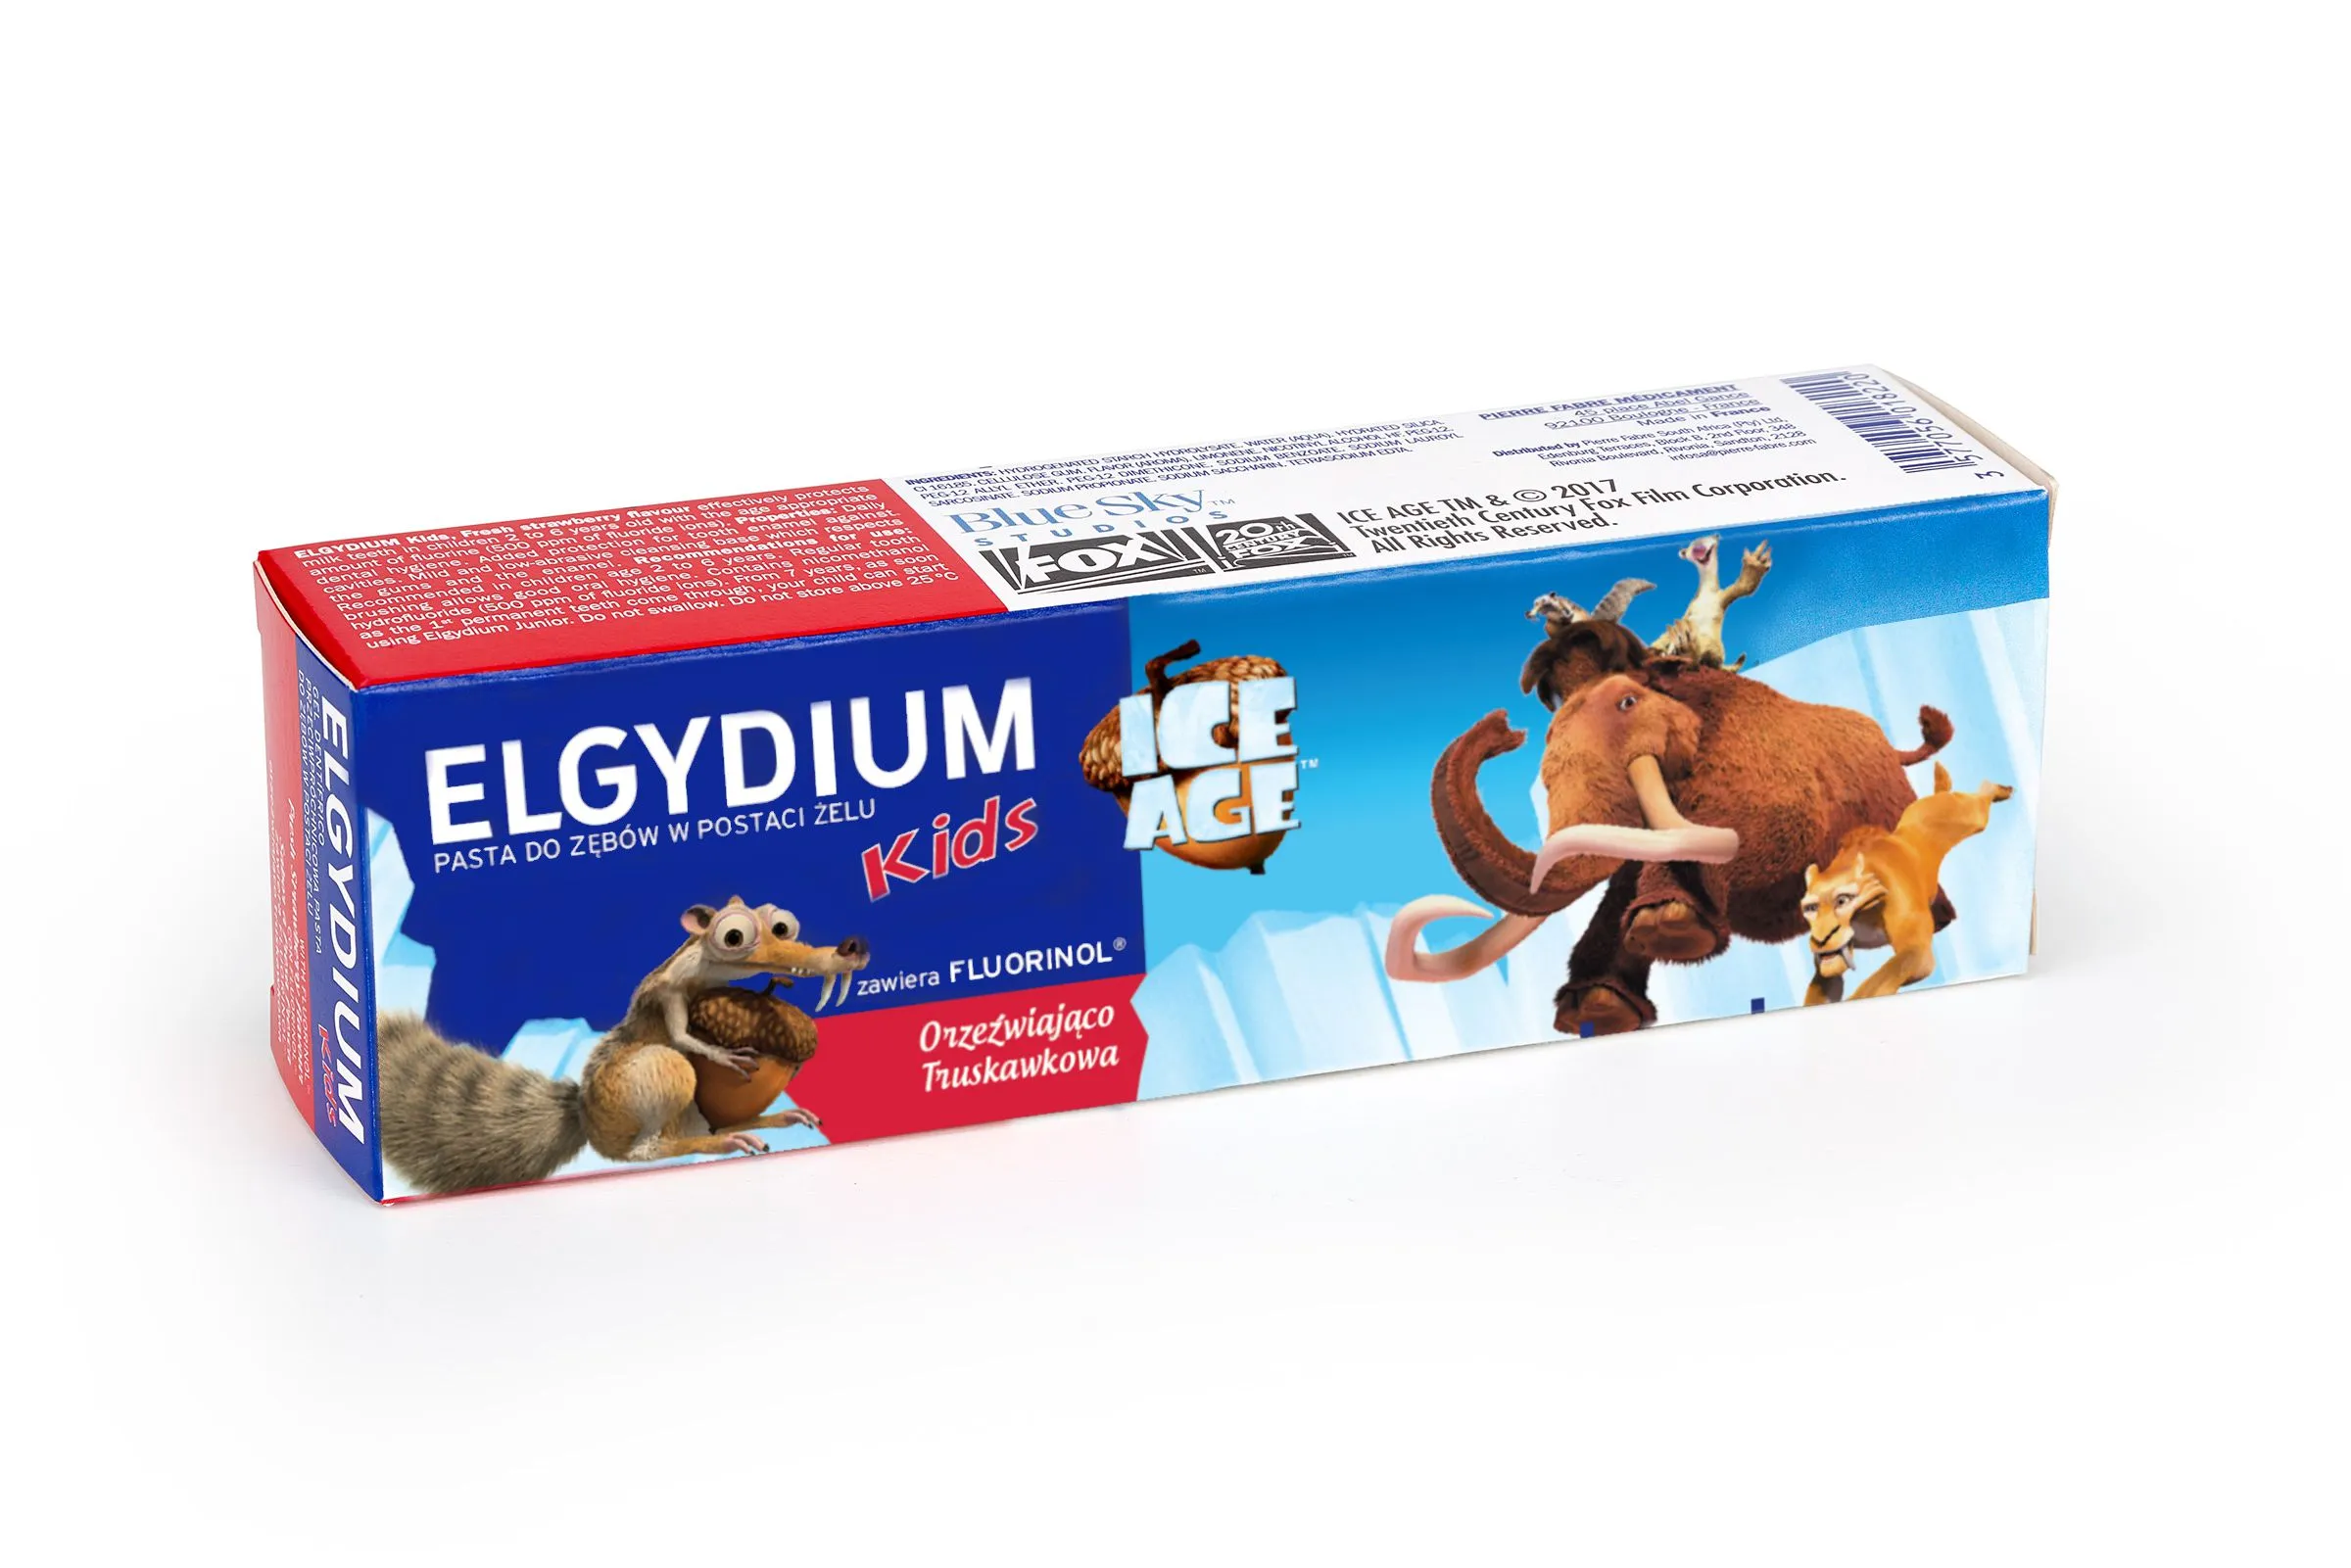 Elgydium Kids, pasta do zębów dla dzieci 3-6 lat, Ice Age, 50 ml